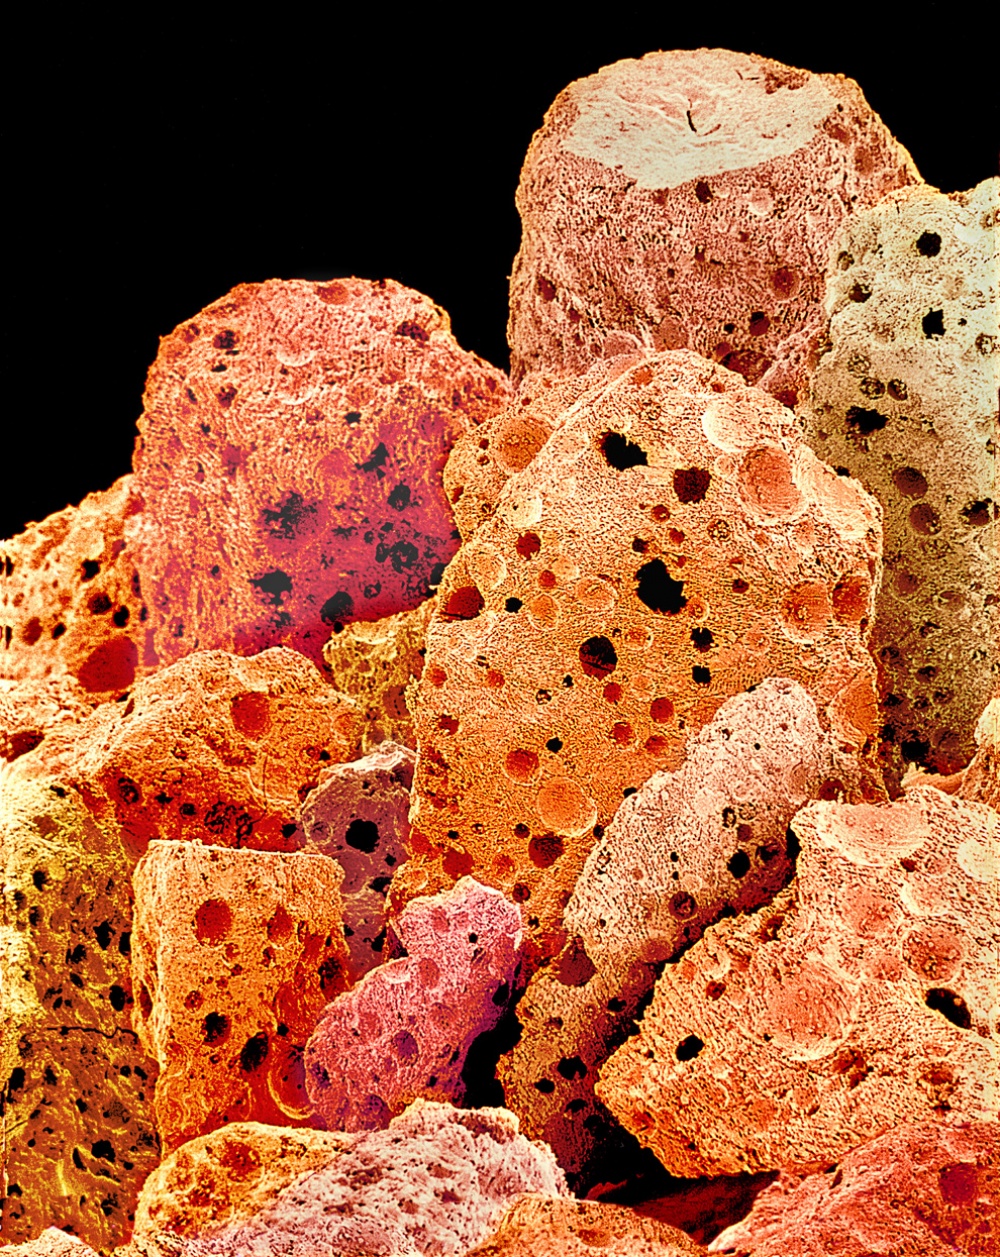 7 Foto melalui mikroskop makanan, menarik dipandang tapi menyeramkan